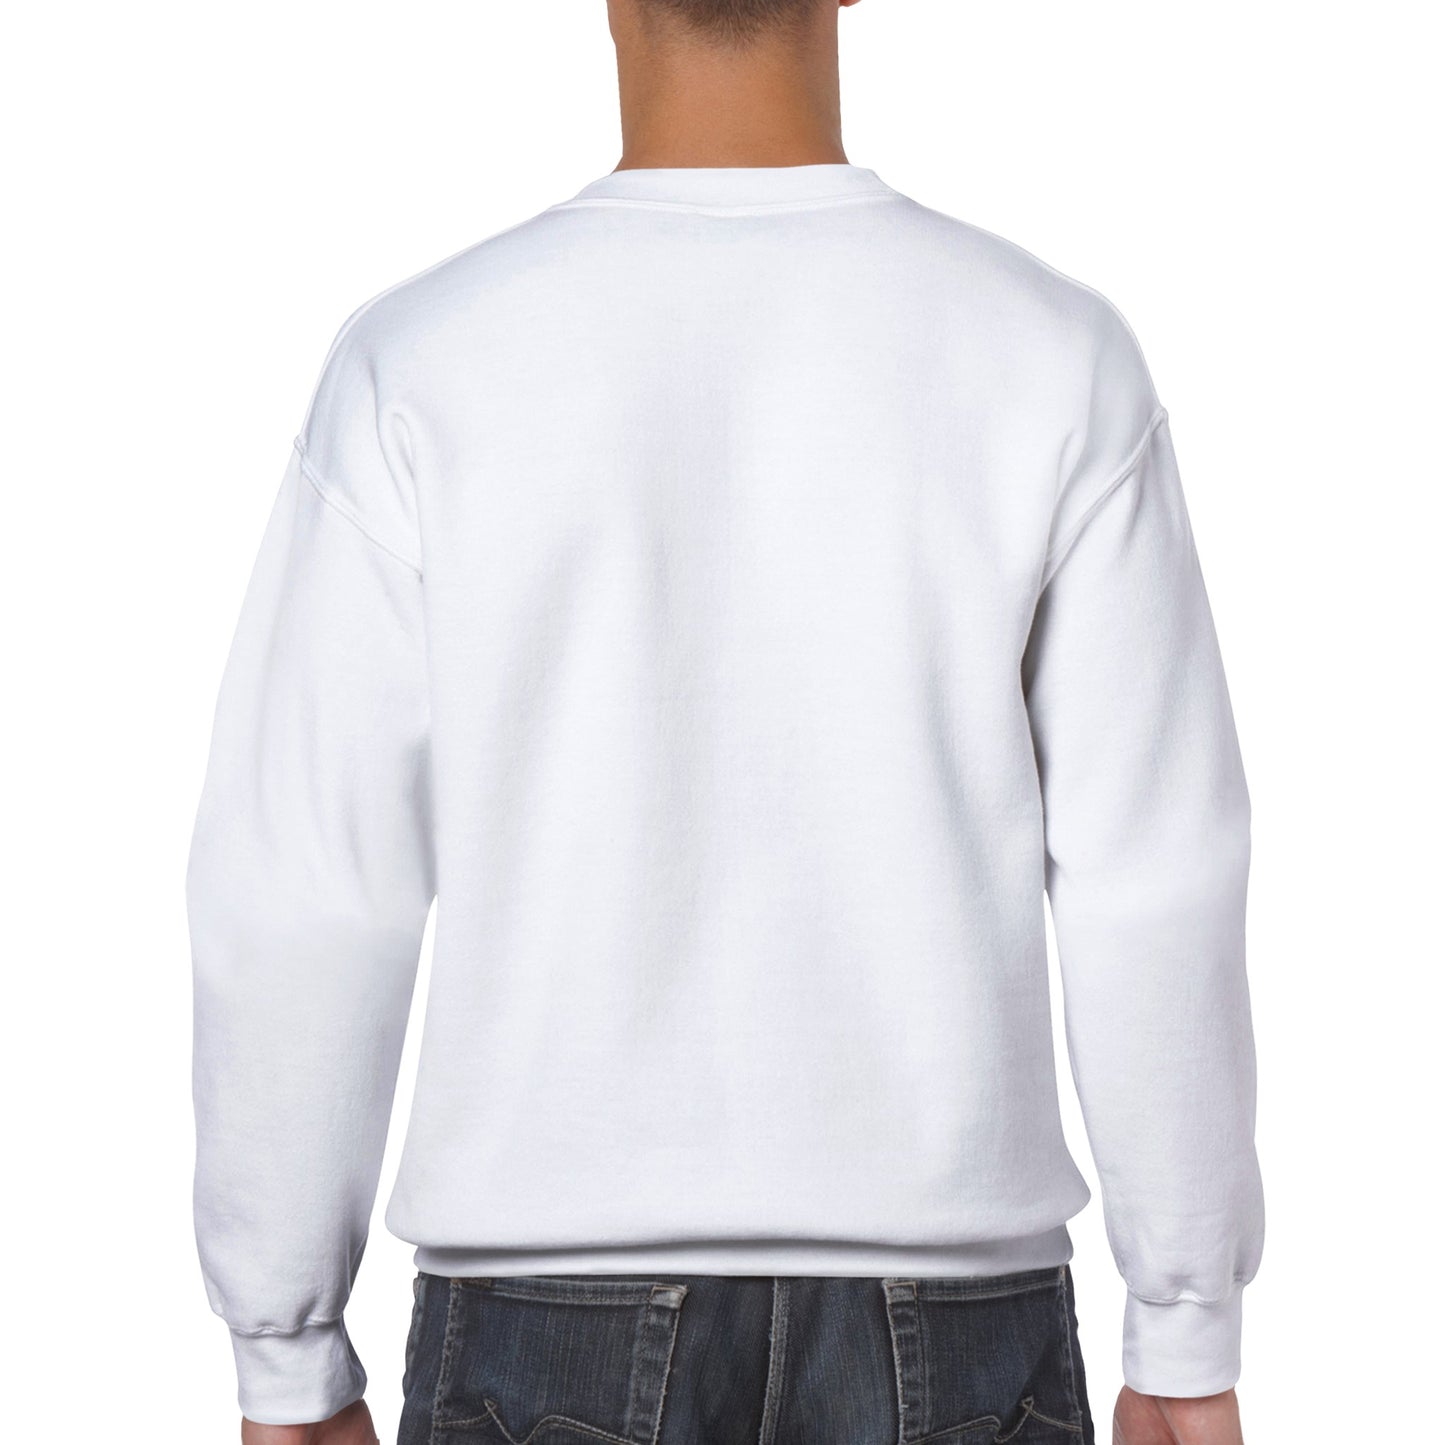 Koda Classic Unisex Crewneck Sweatshirt